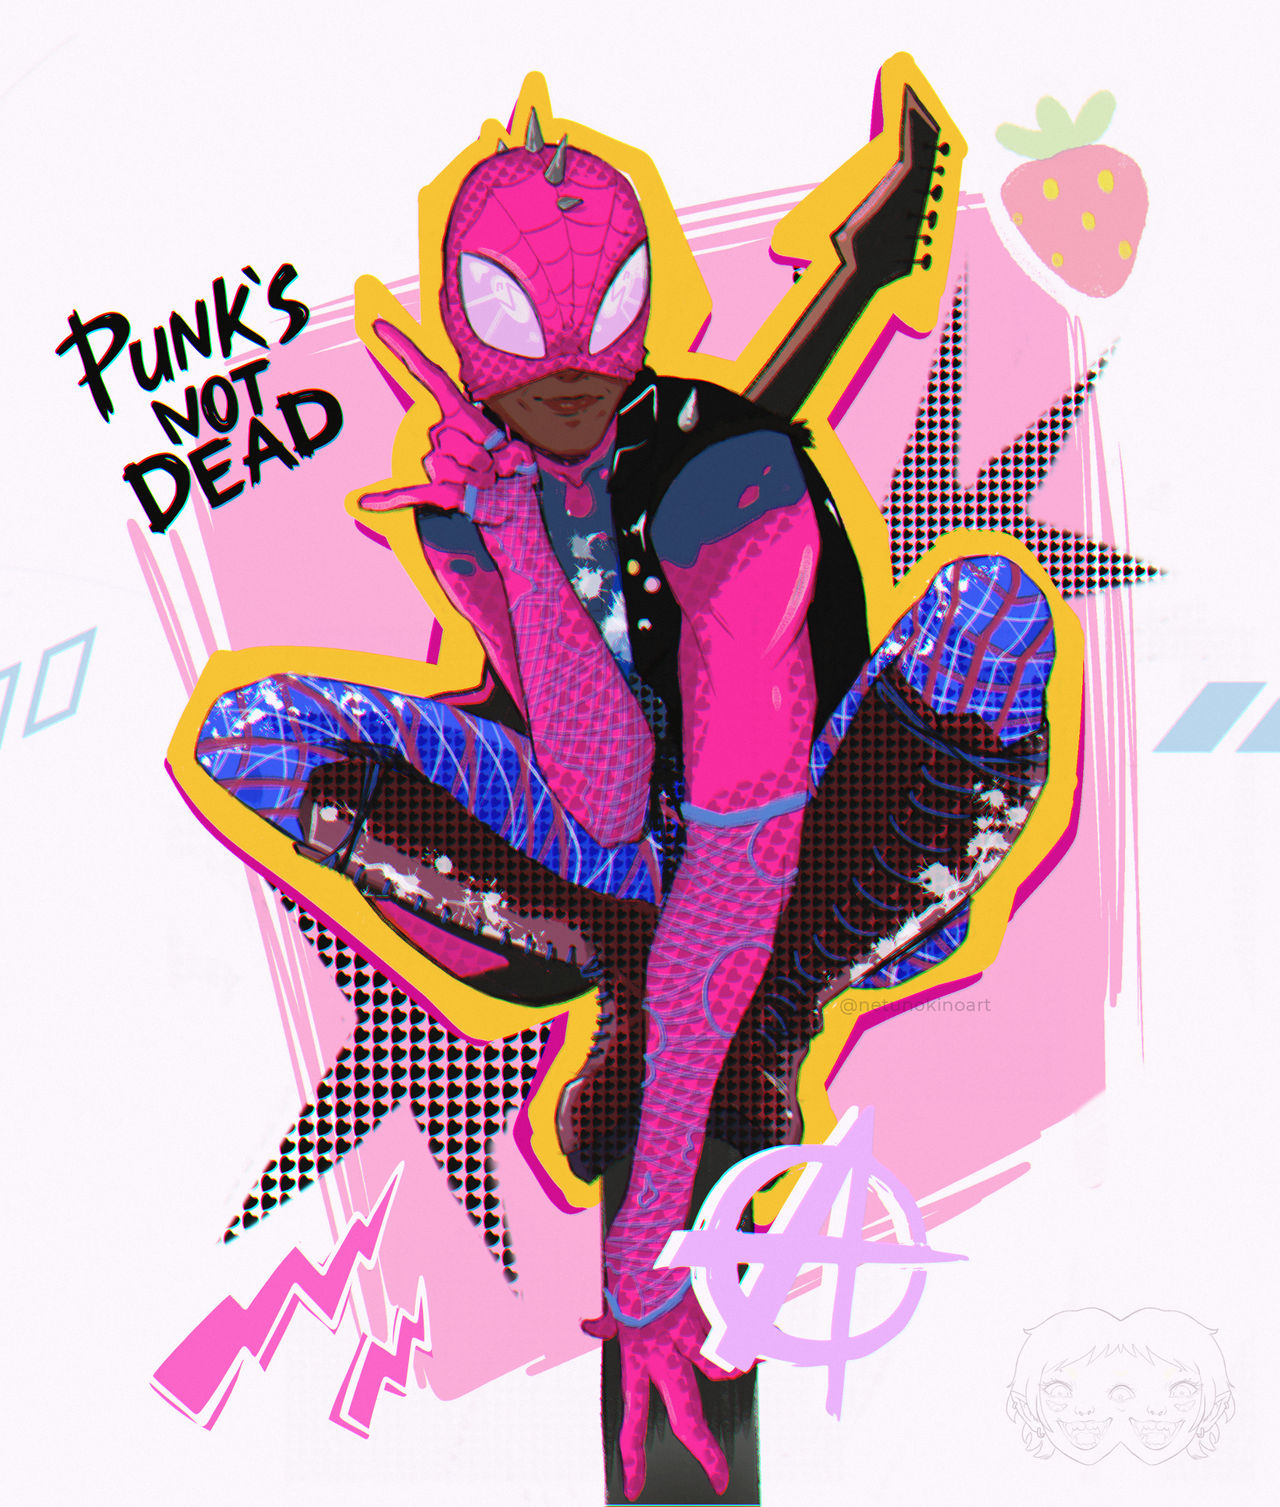 Spider punk by justkkaydraws on DeviantArt